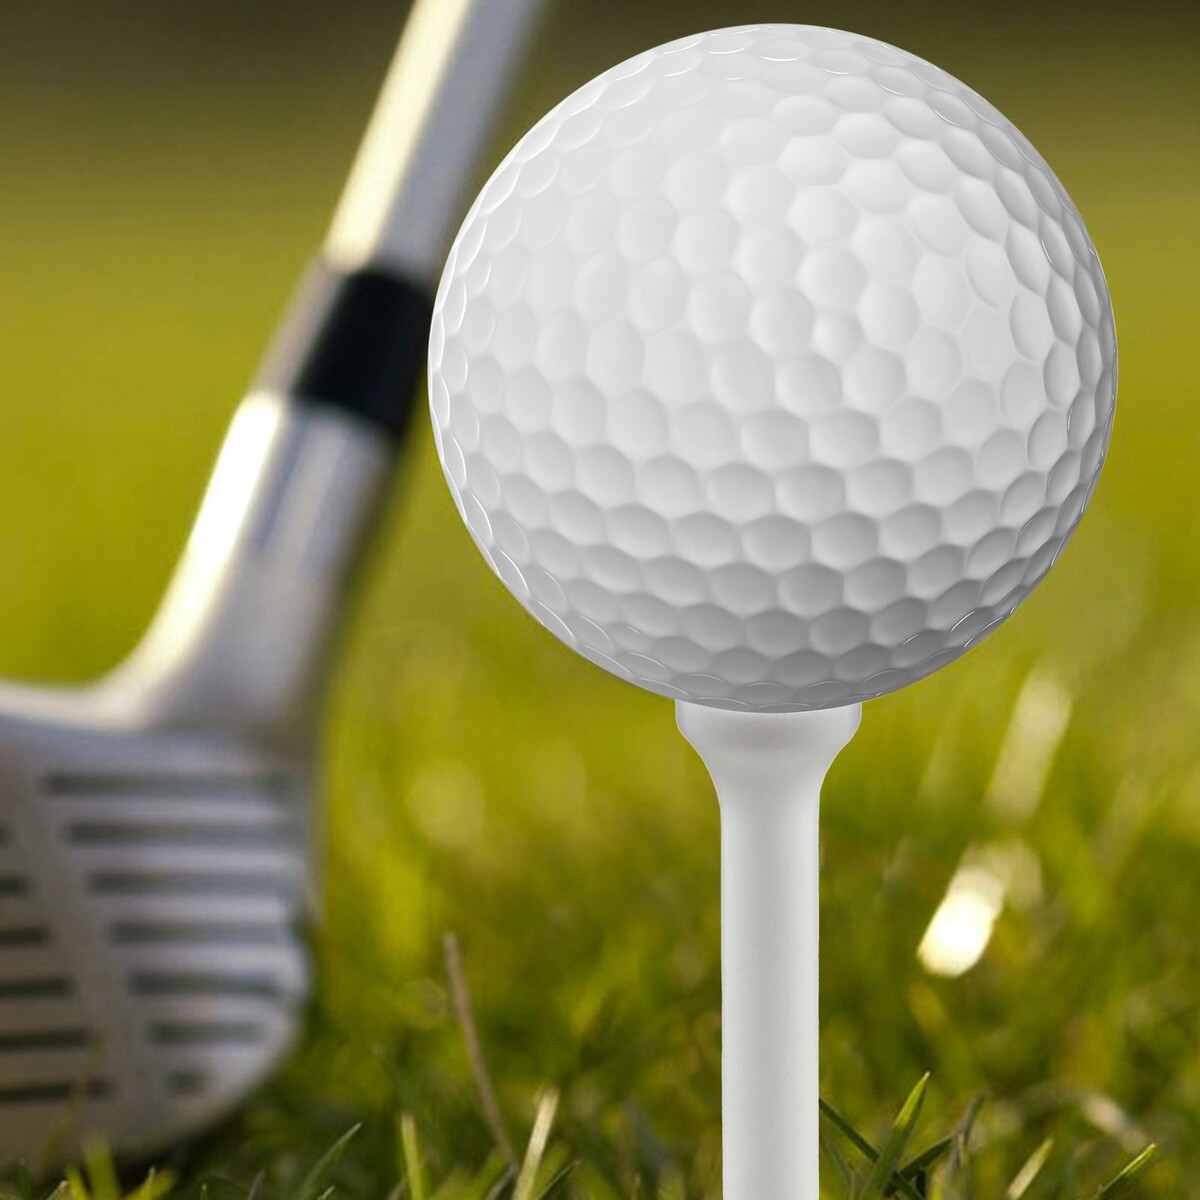 Набор подставок для гольф мяча, 10 штук, пластик, 1 х 7 см, белый цвет набор подставок для гольф мяча из пластика h 8 3 см 10 шт белые